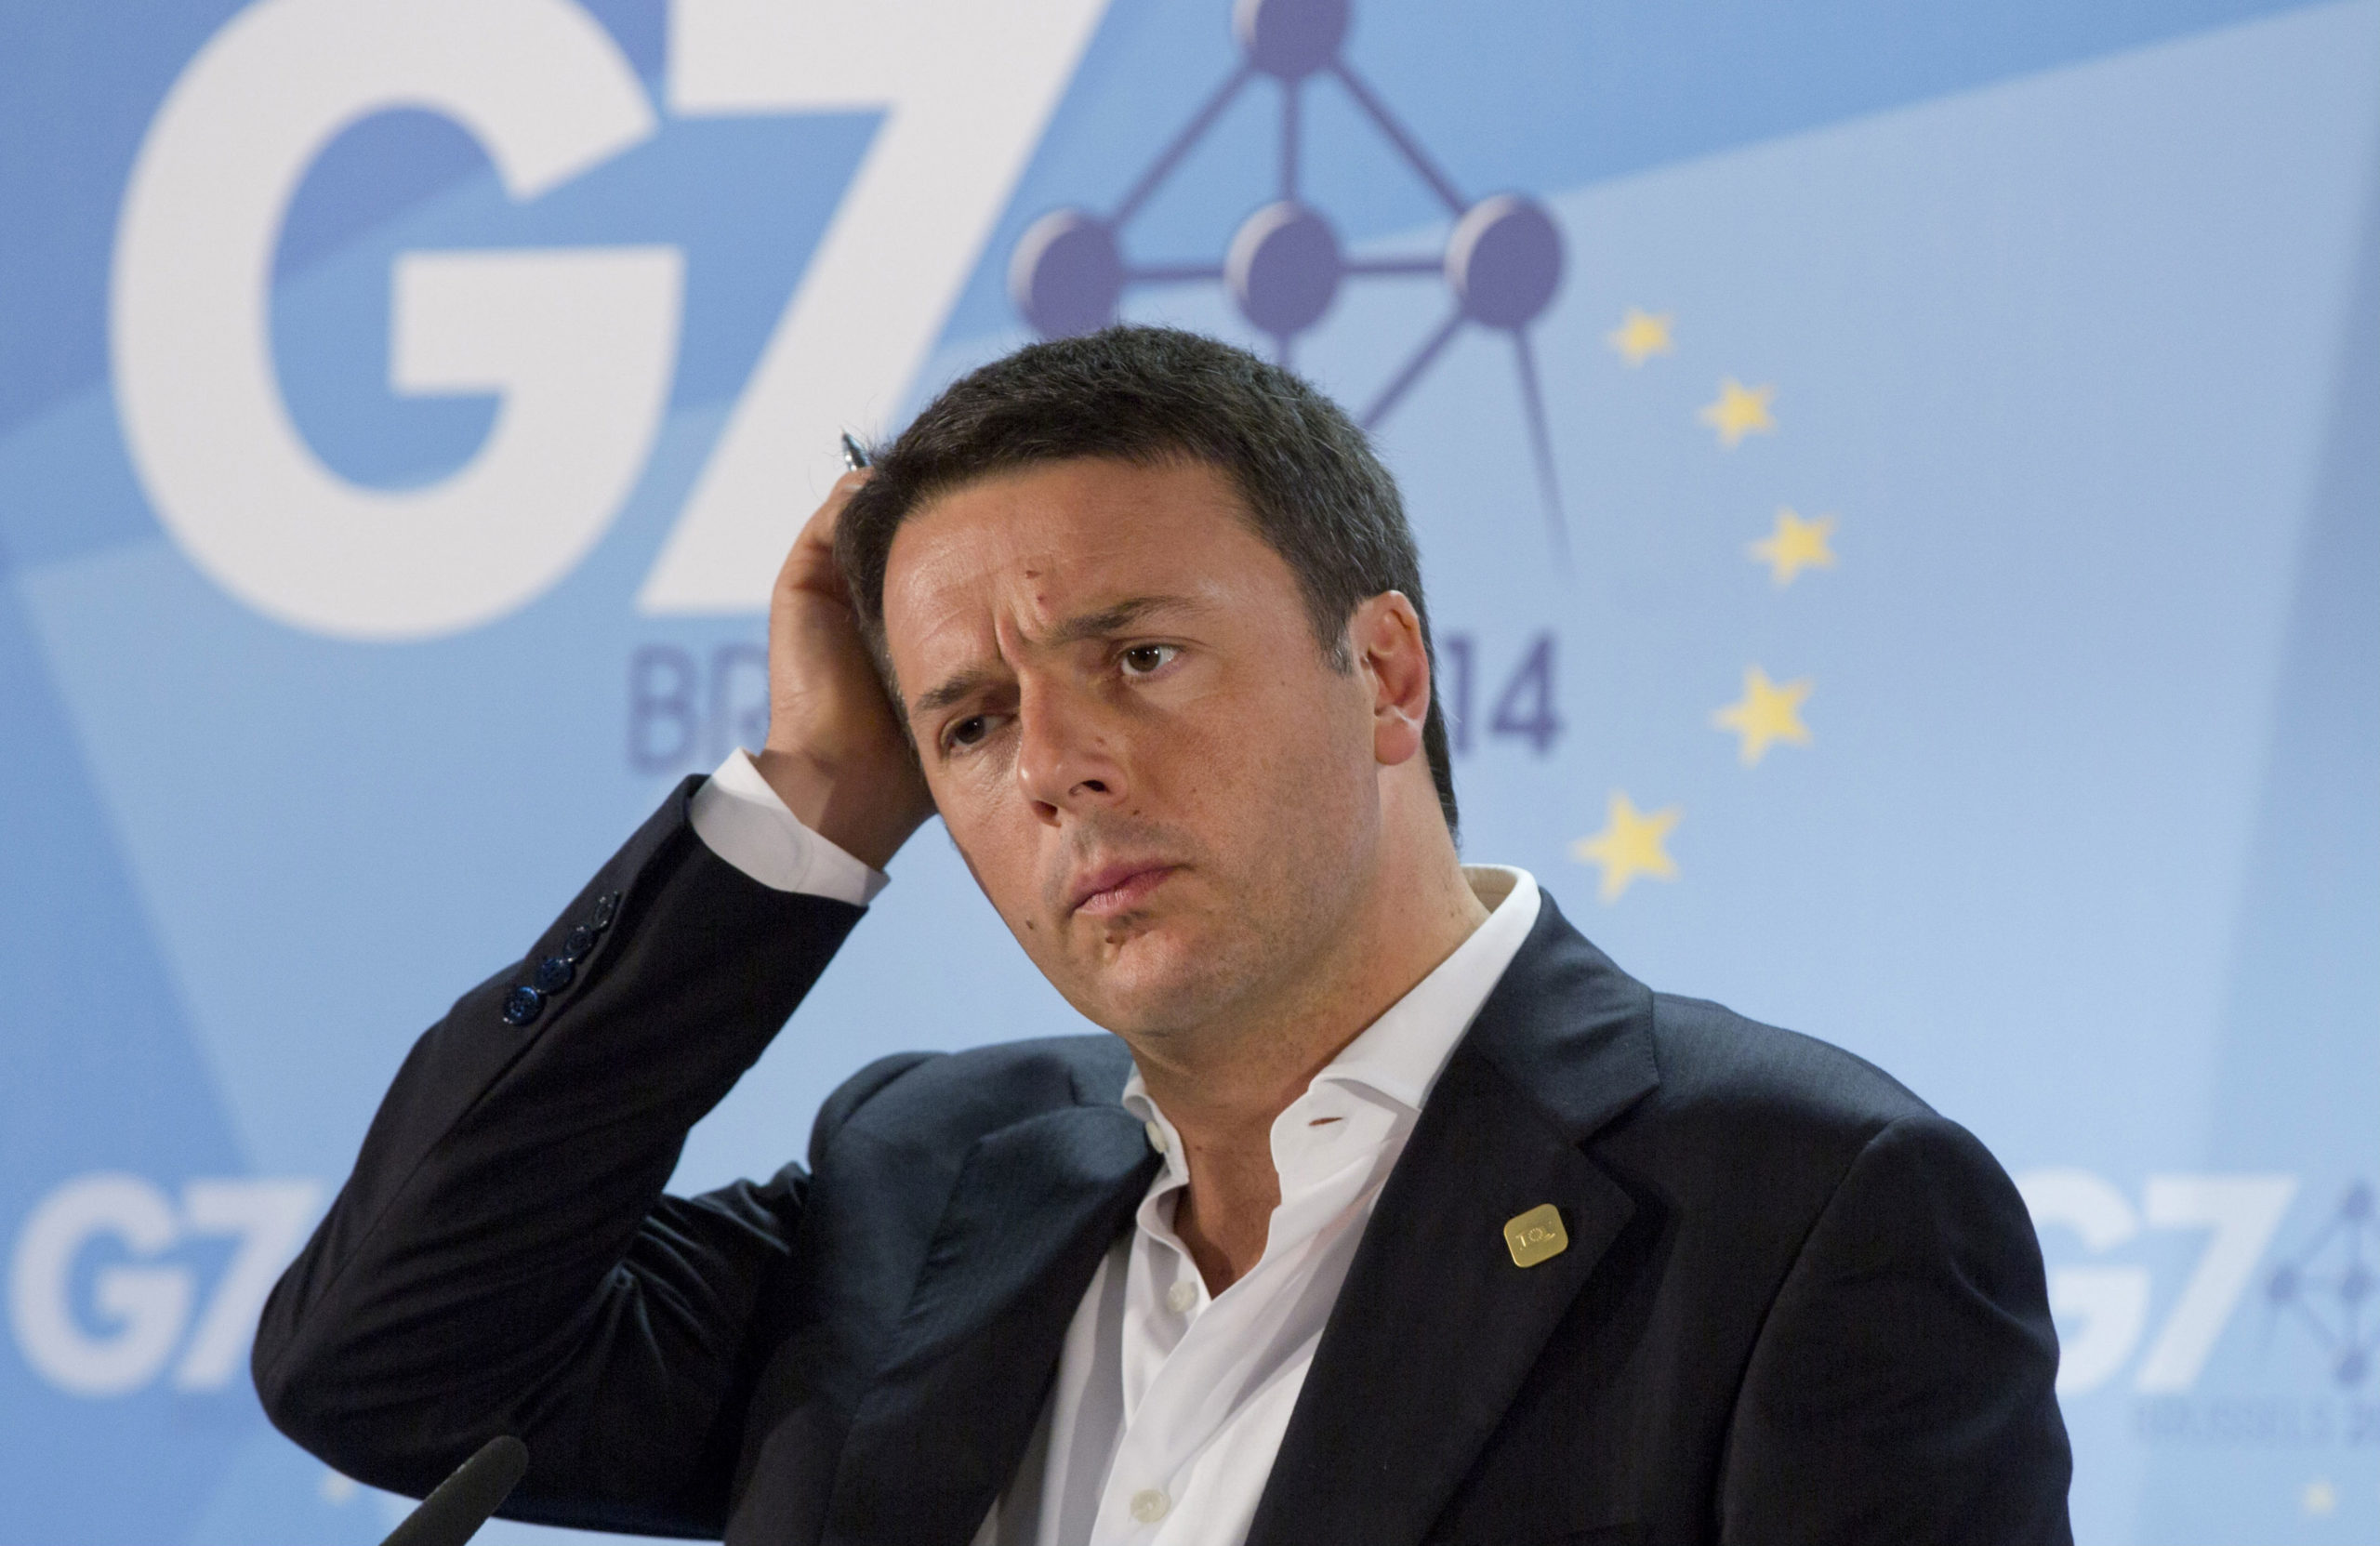 Πρόστιμο 2.000 ευρώ για ανεξόφλητη κλήση στον Ιταλό Πρωθυπουργό